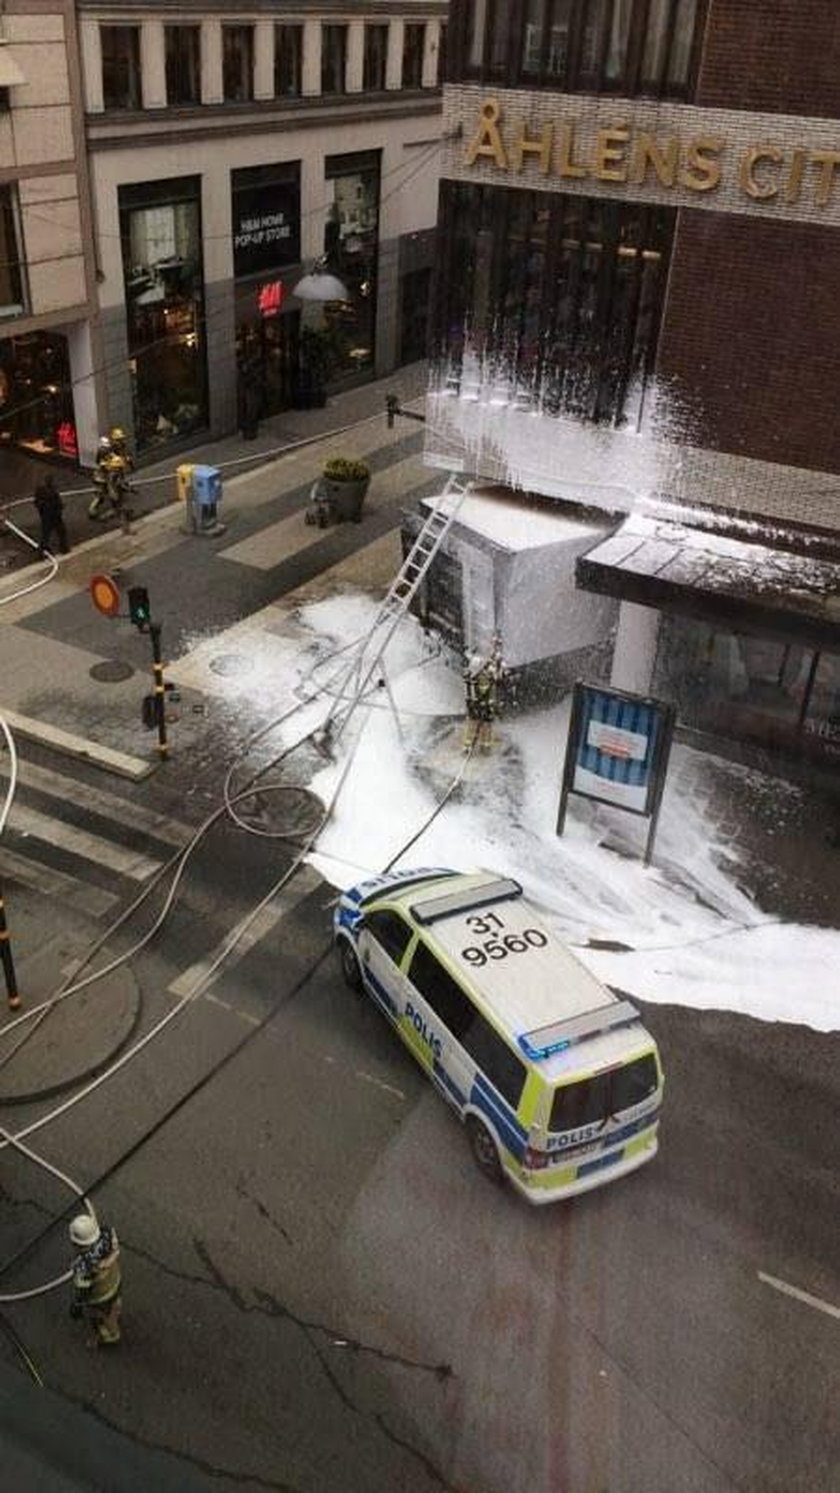 Ciężarówka wjechała w tłum ludzi w centrum Sztokholmu